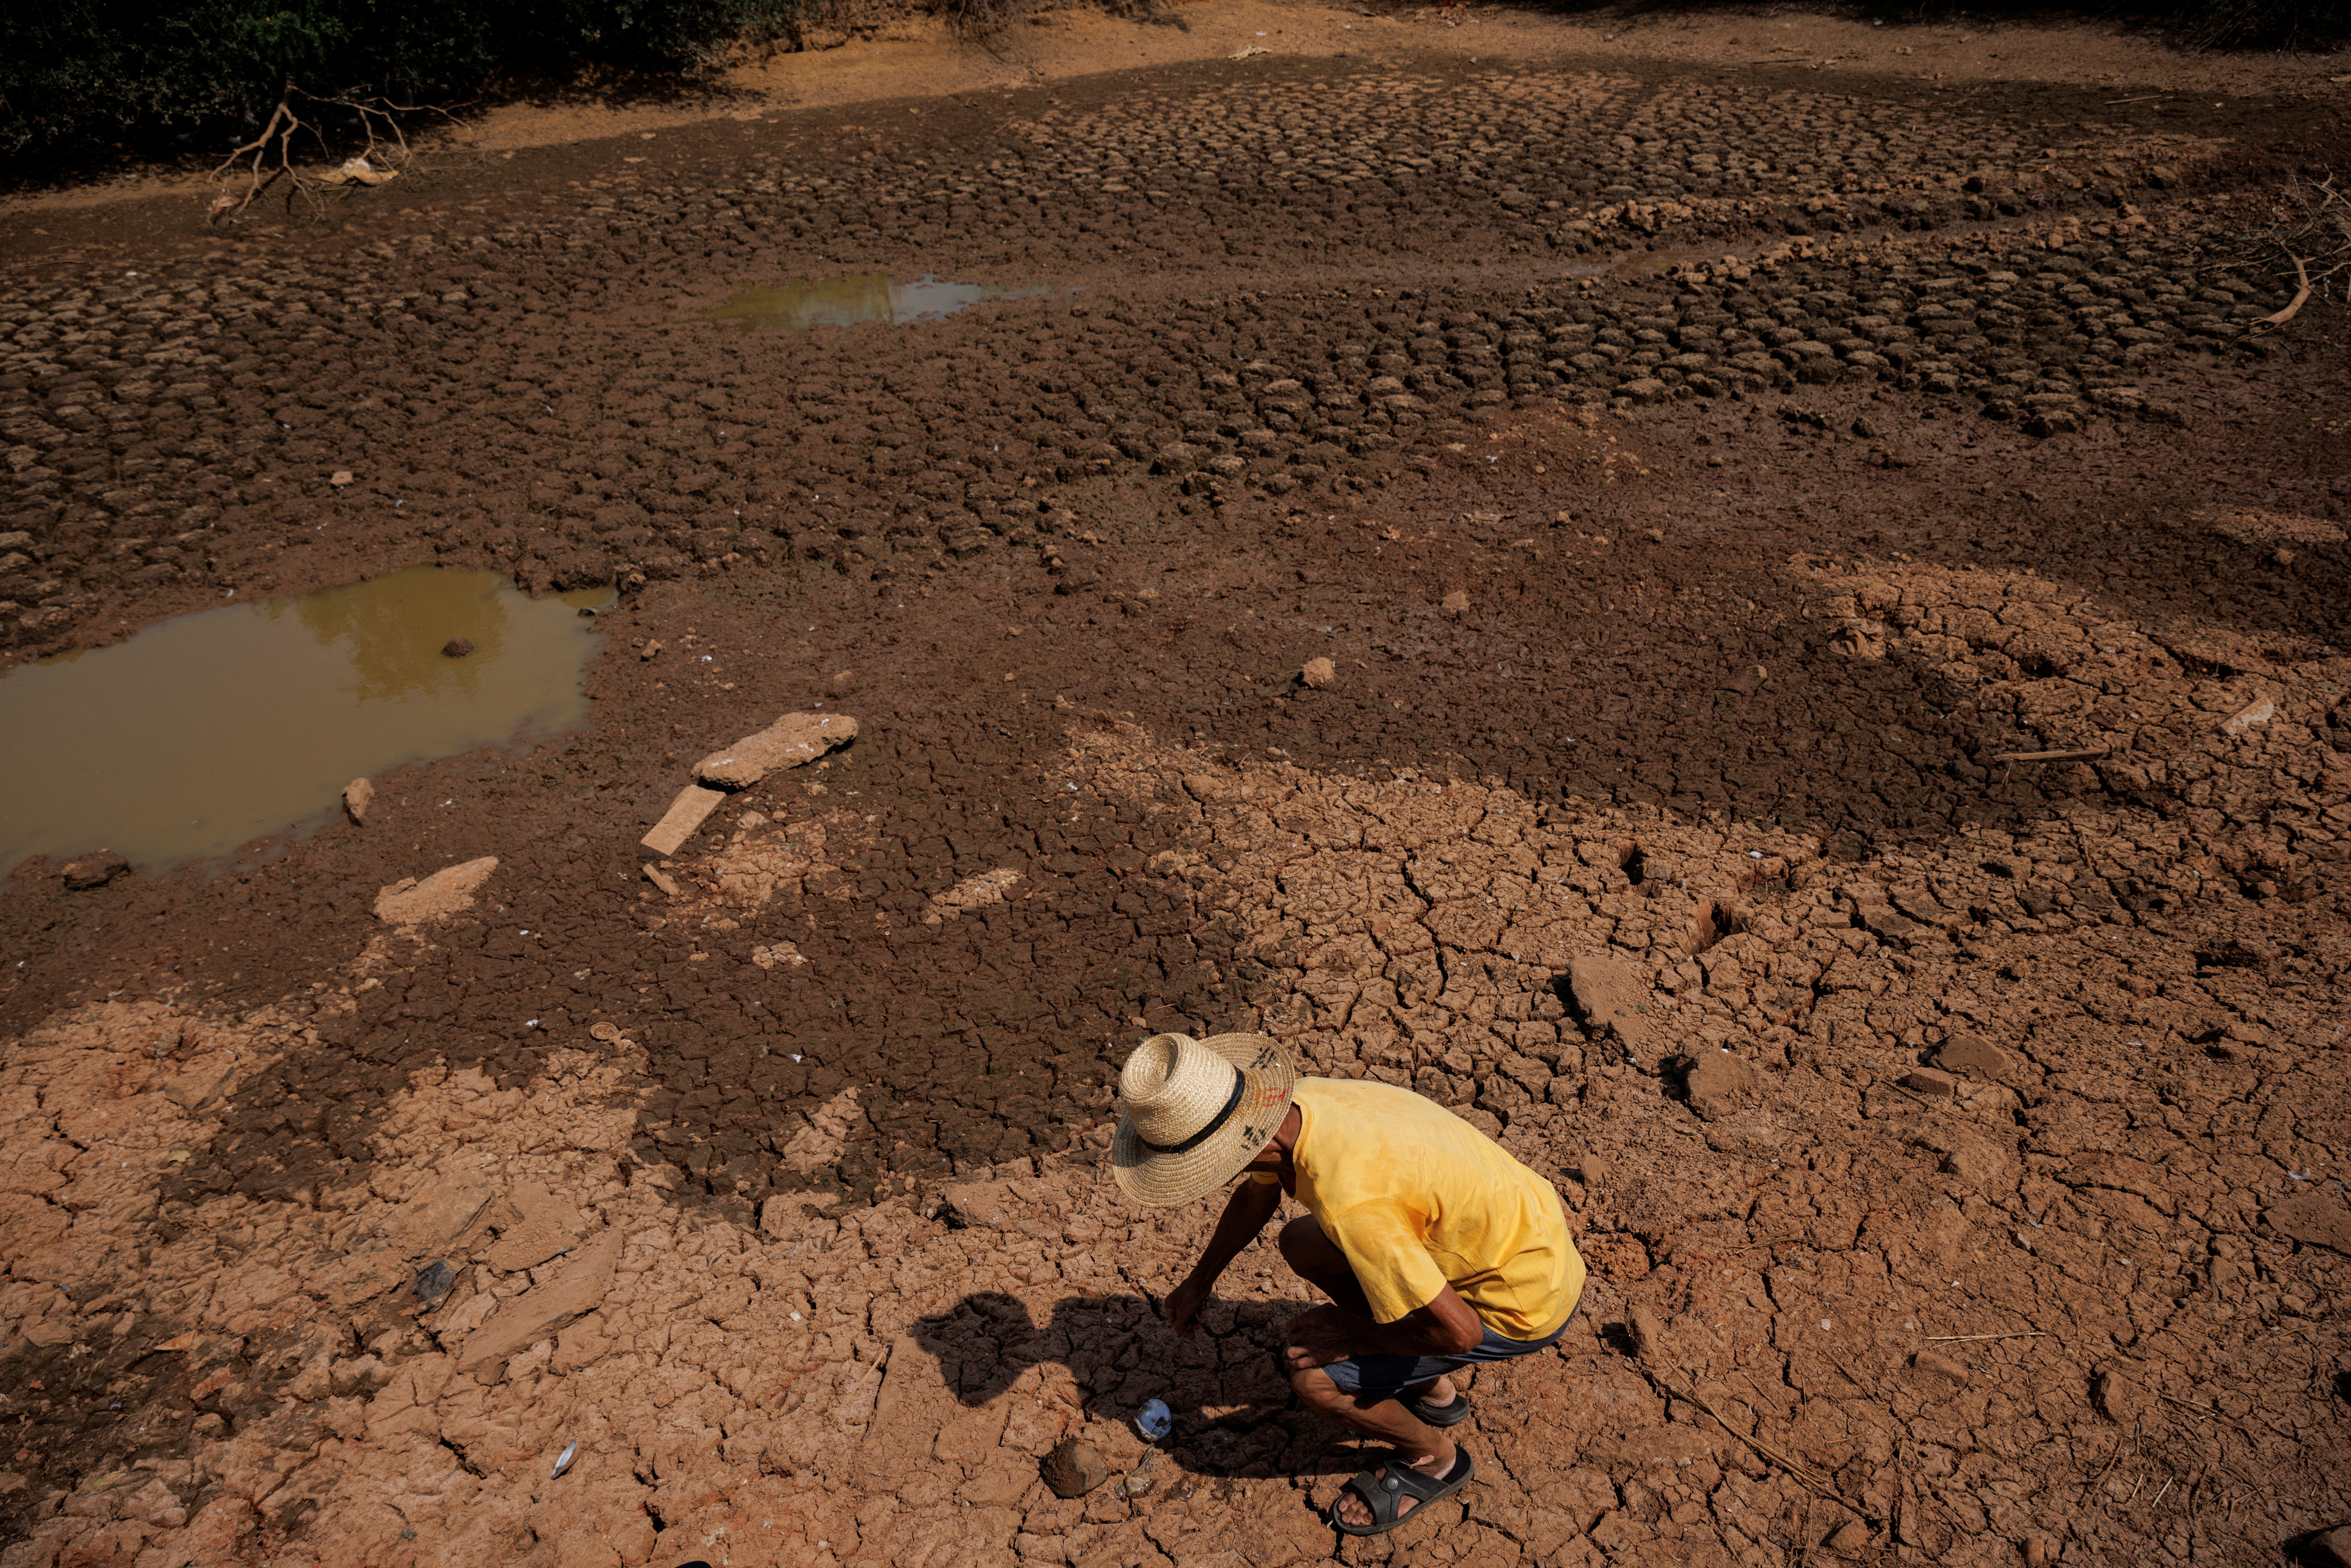 70-річний фермер Ху підбирає мертву мідію в сільському ставку, який висох приблизно 10 днів тому, коли в регіоні в селі Сіньяо спостерігається посуха.